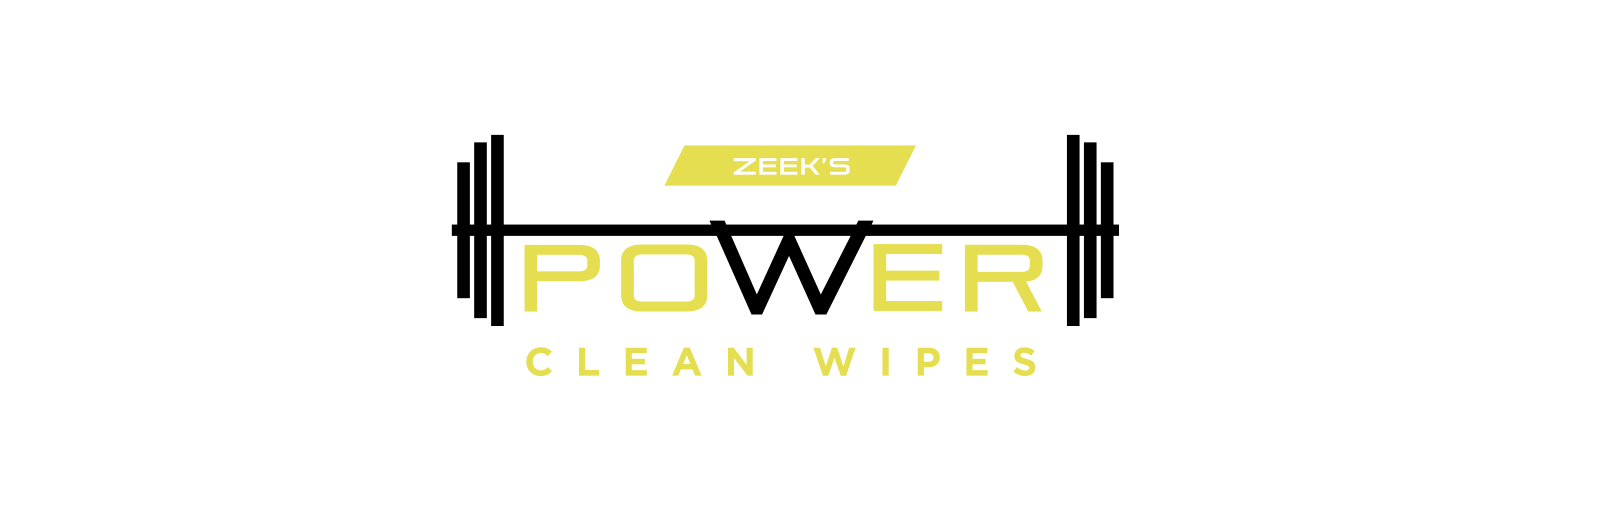 Zeek's Power Clean Wipes logo